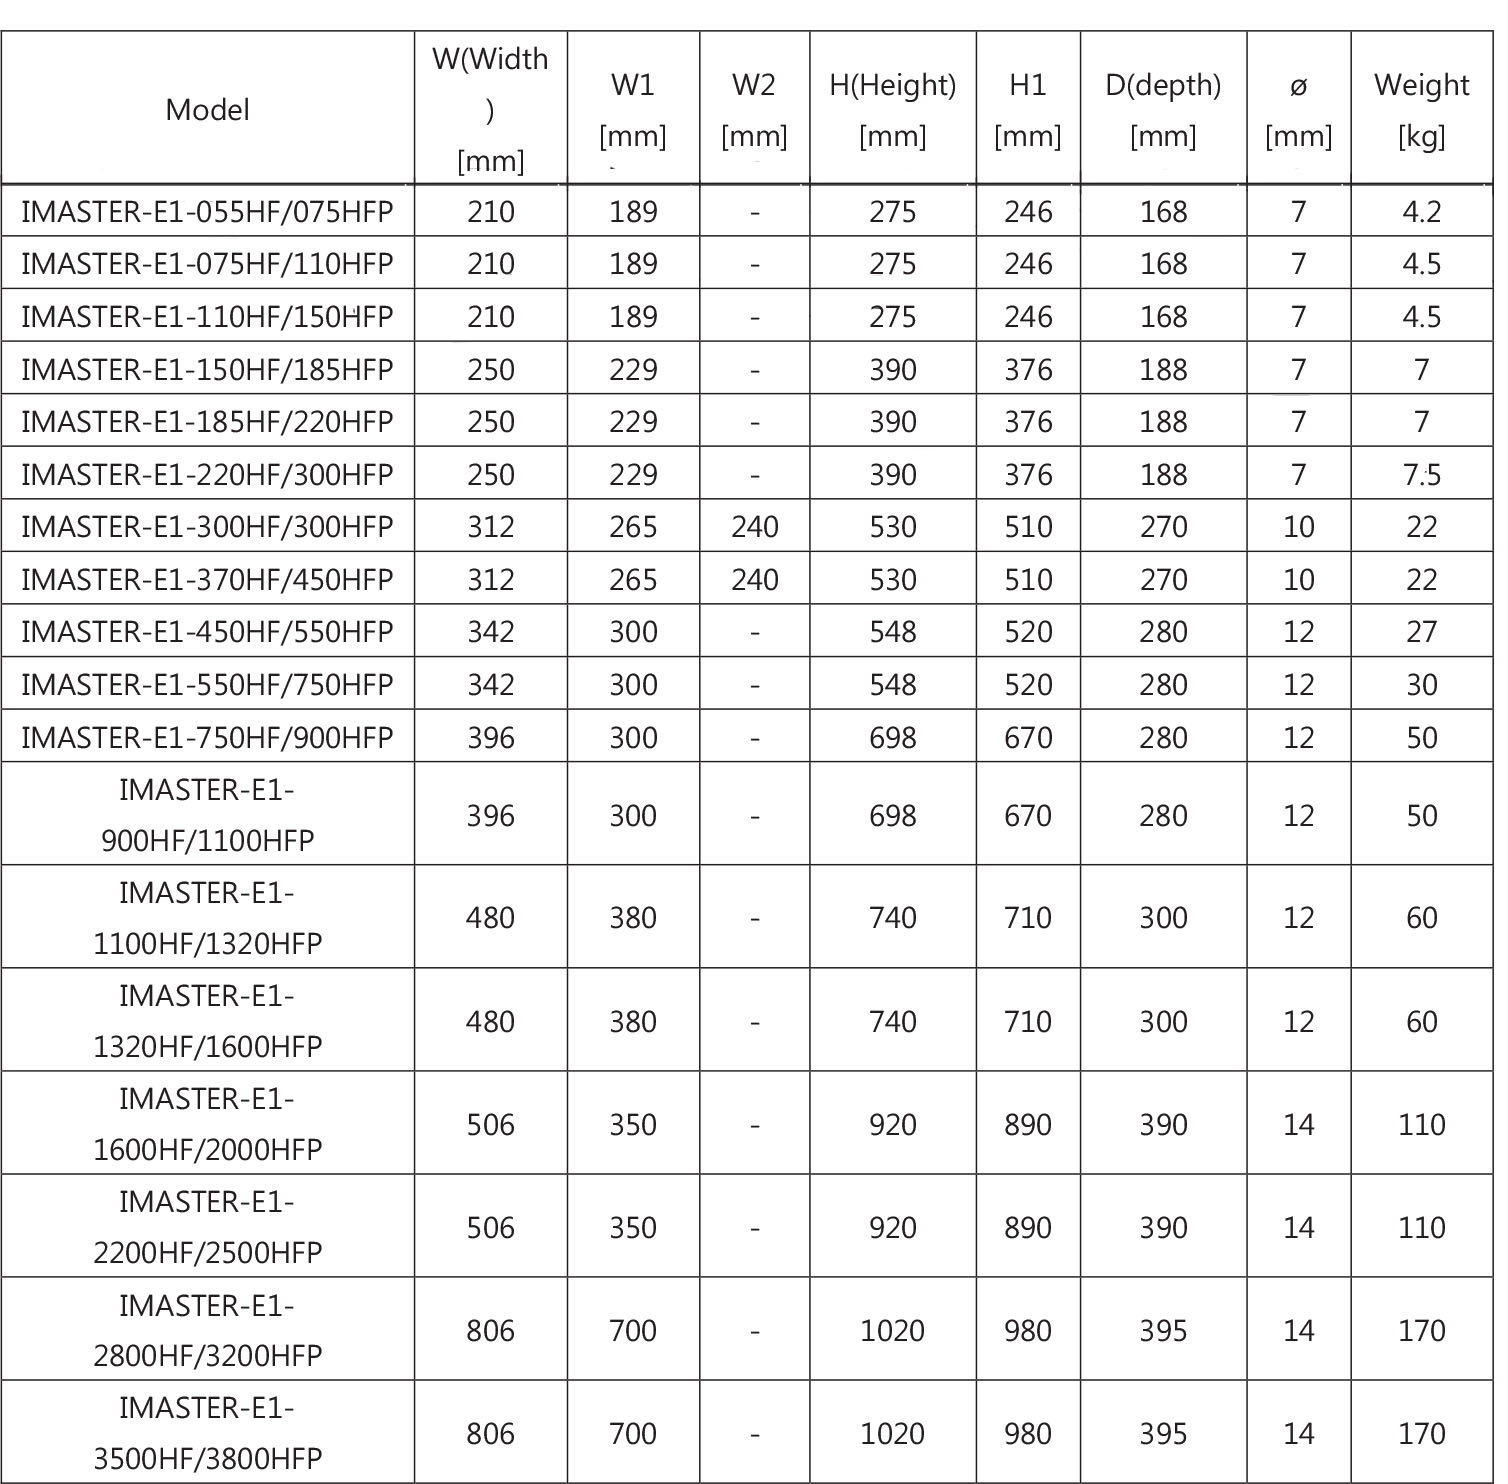 جدول ابعاد اینورتر آیمستر سری E1 مدل E1-2200HF/2500HFP